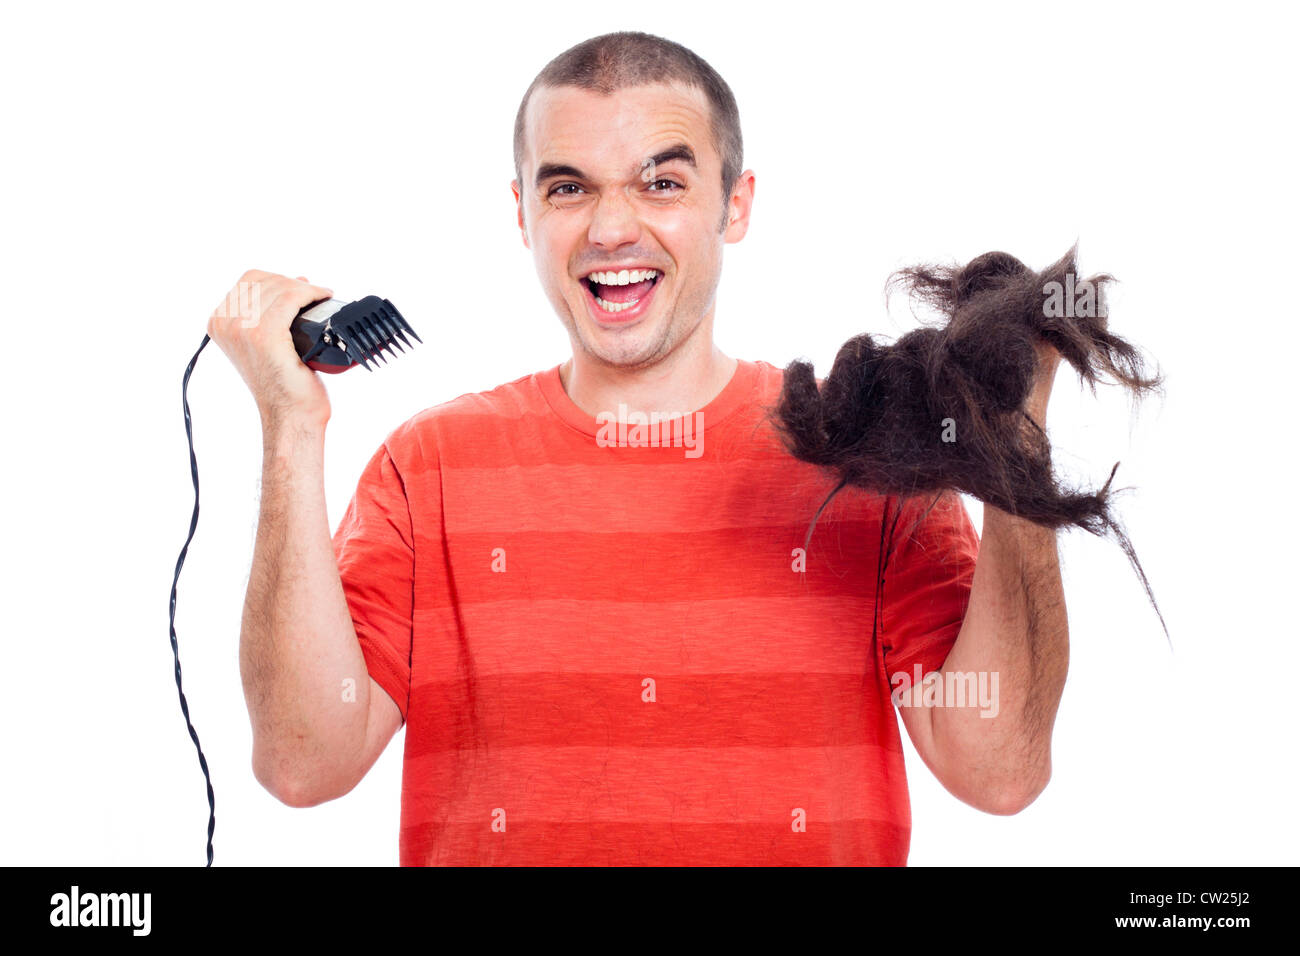 Lustige glatzköpfiger Mann hält seine lange rasierte Haare und Haar-Trimmer, isoliert auf weißem Hintergrund. Stockfoto